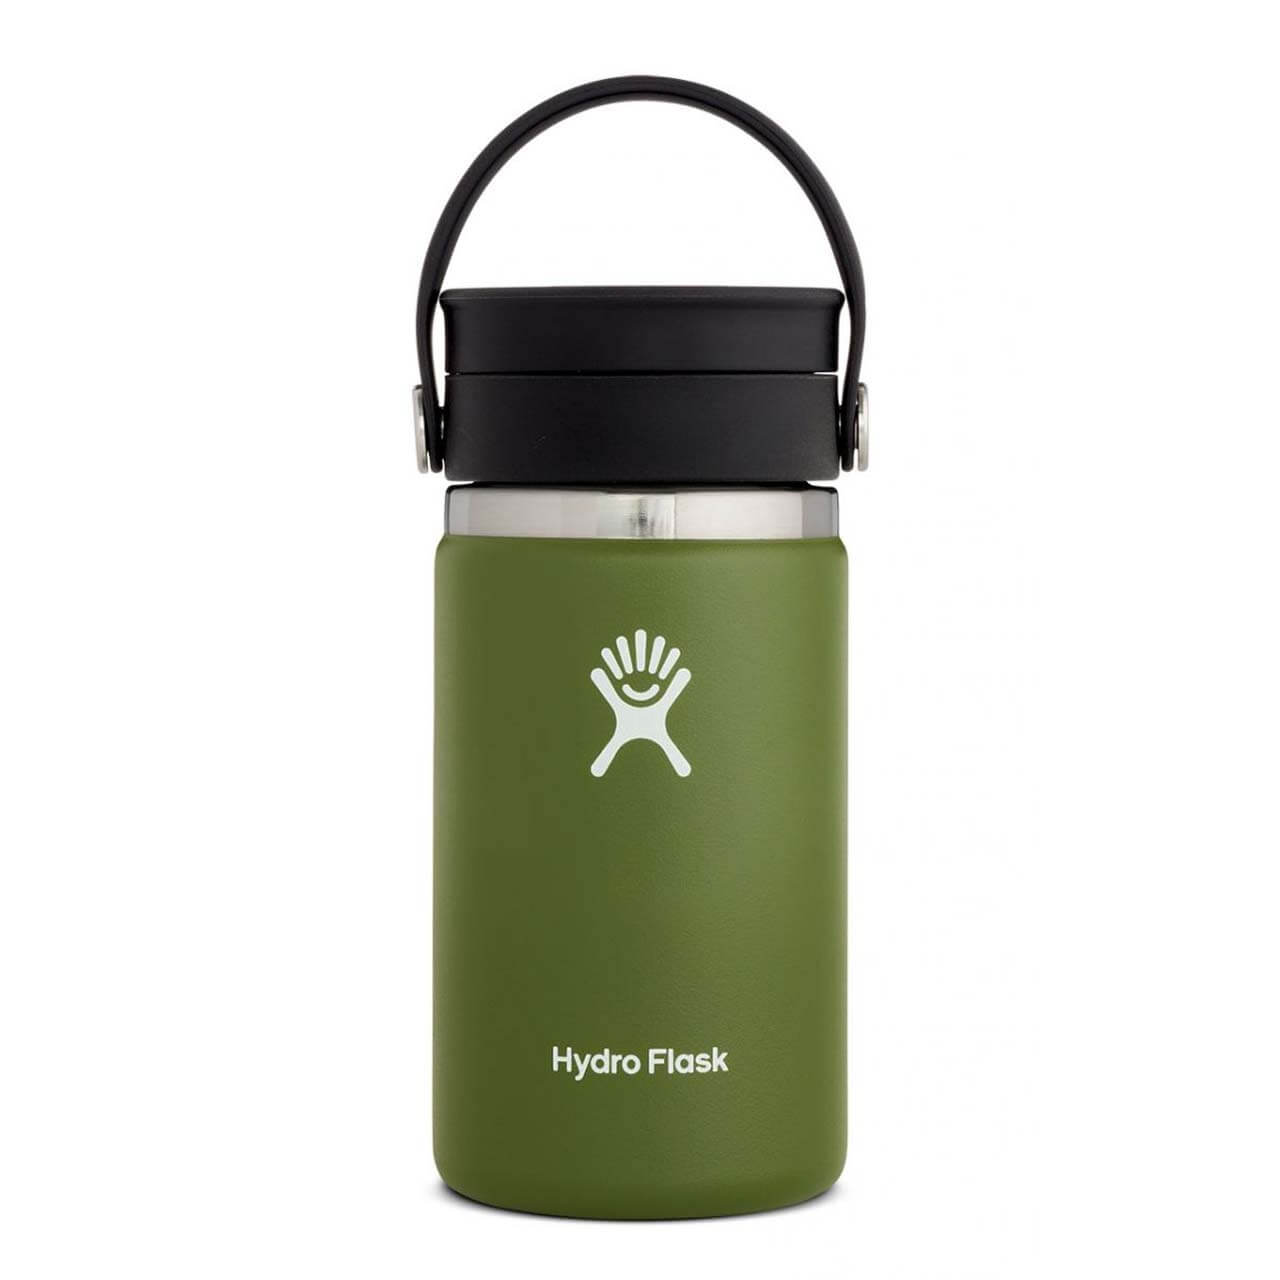 Hydro Flask Kaffeebecher - Olive, 12 oz von Hydro Flask}